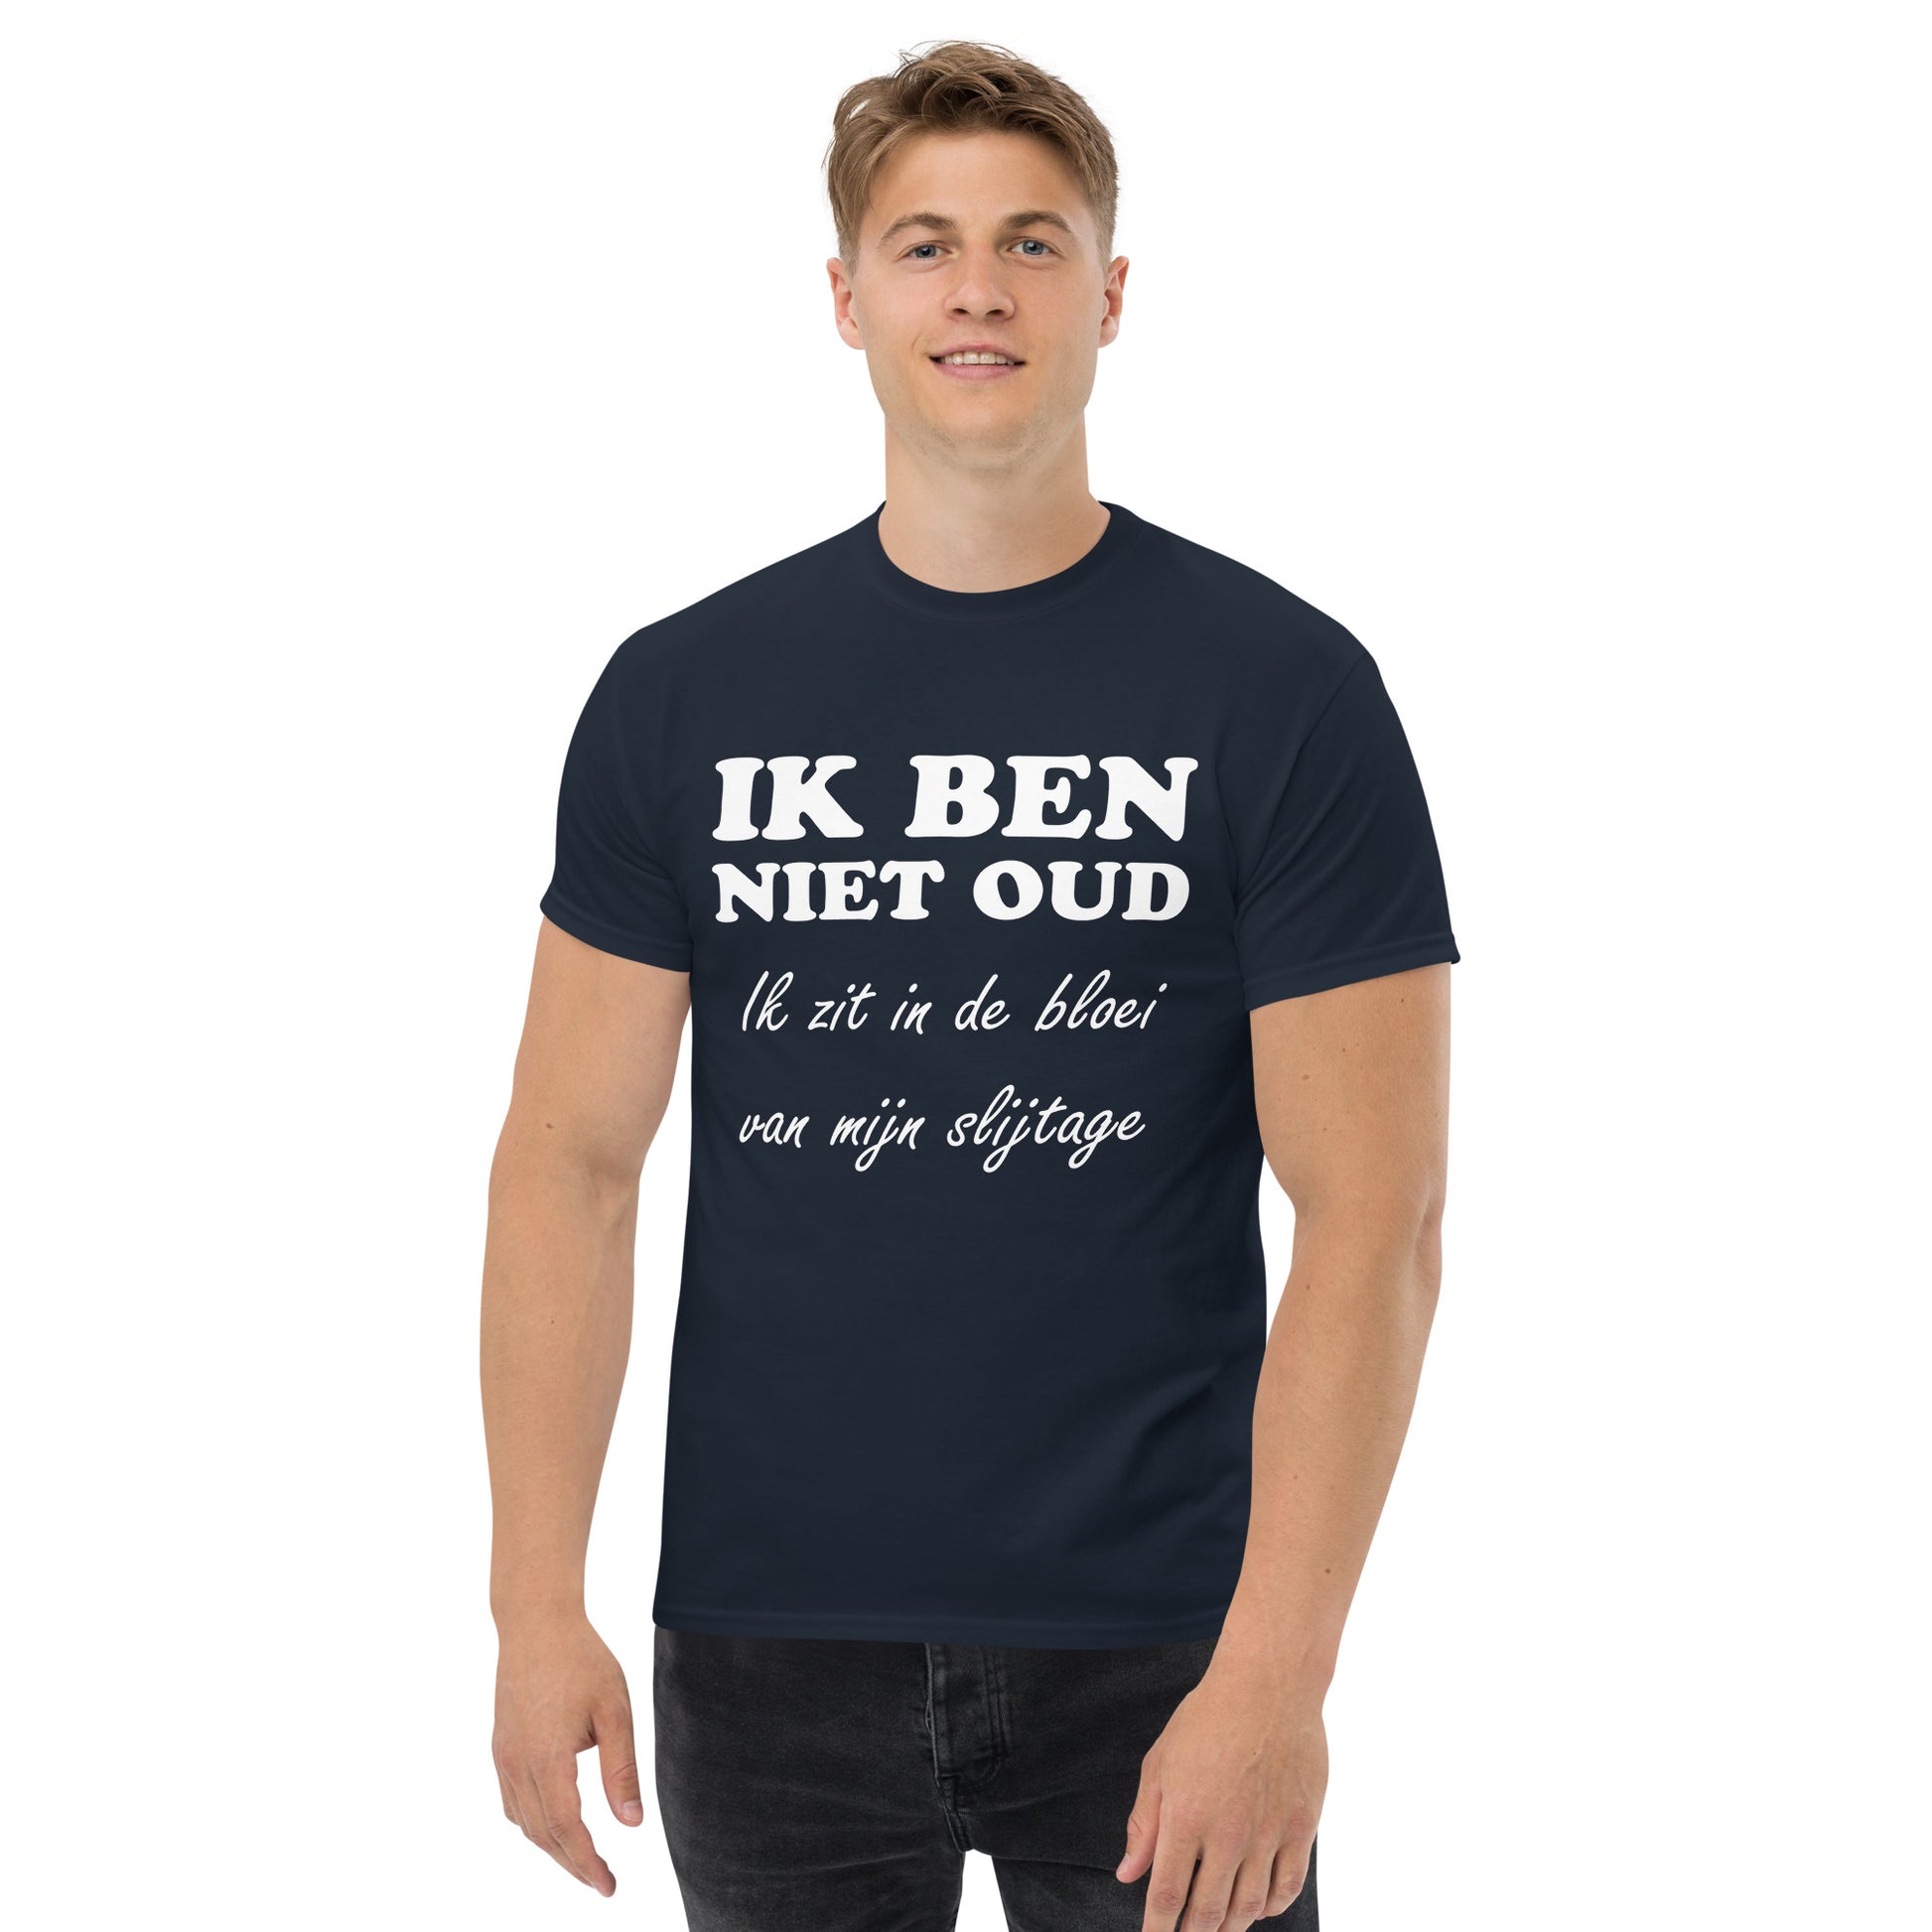 Navy T-shirt with the text "IK BEN NIET OUD ik zit in de bloei van mijn slijtage"